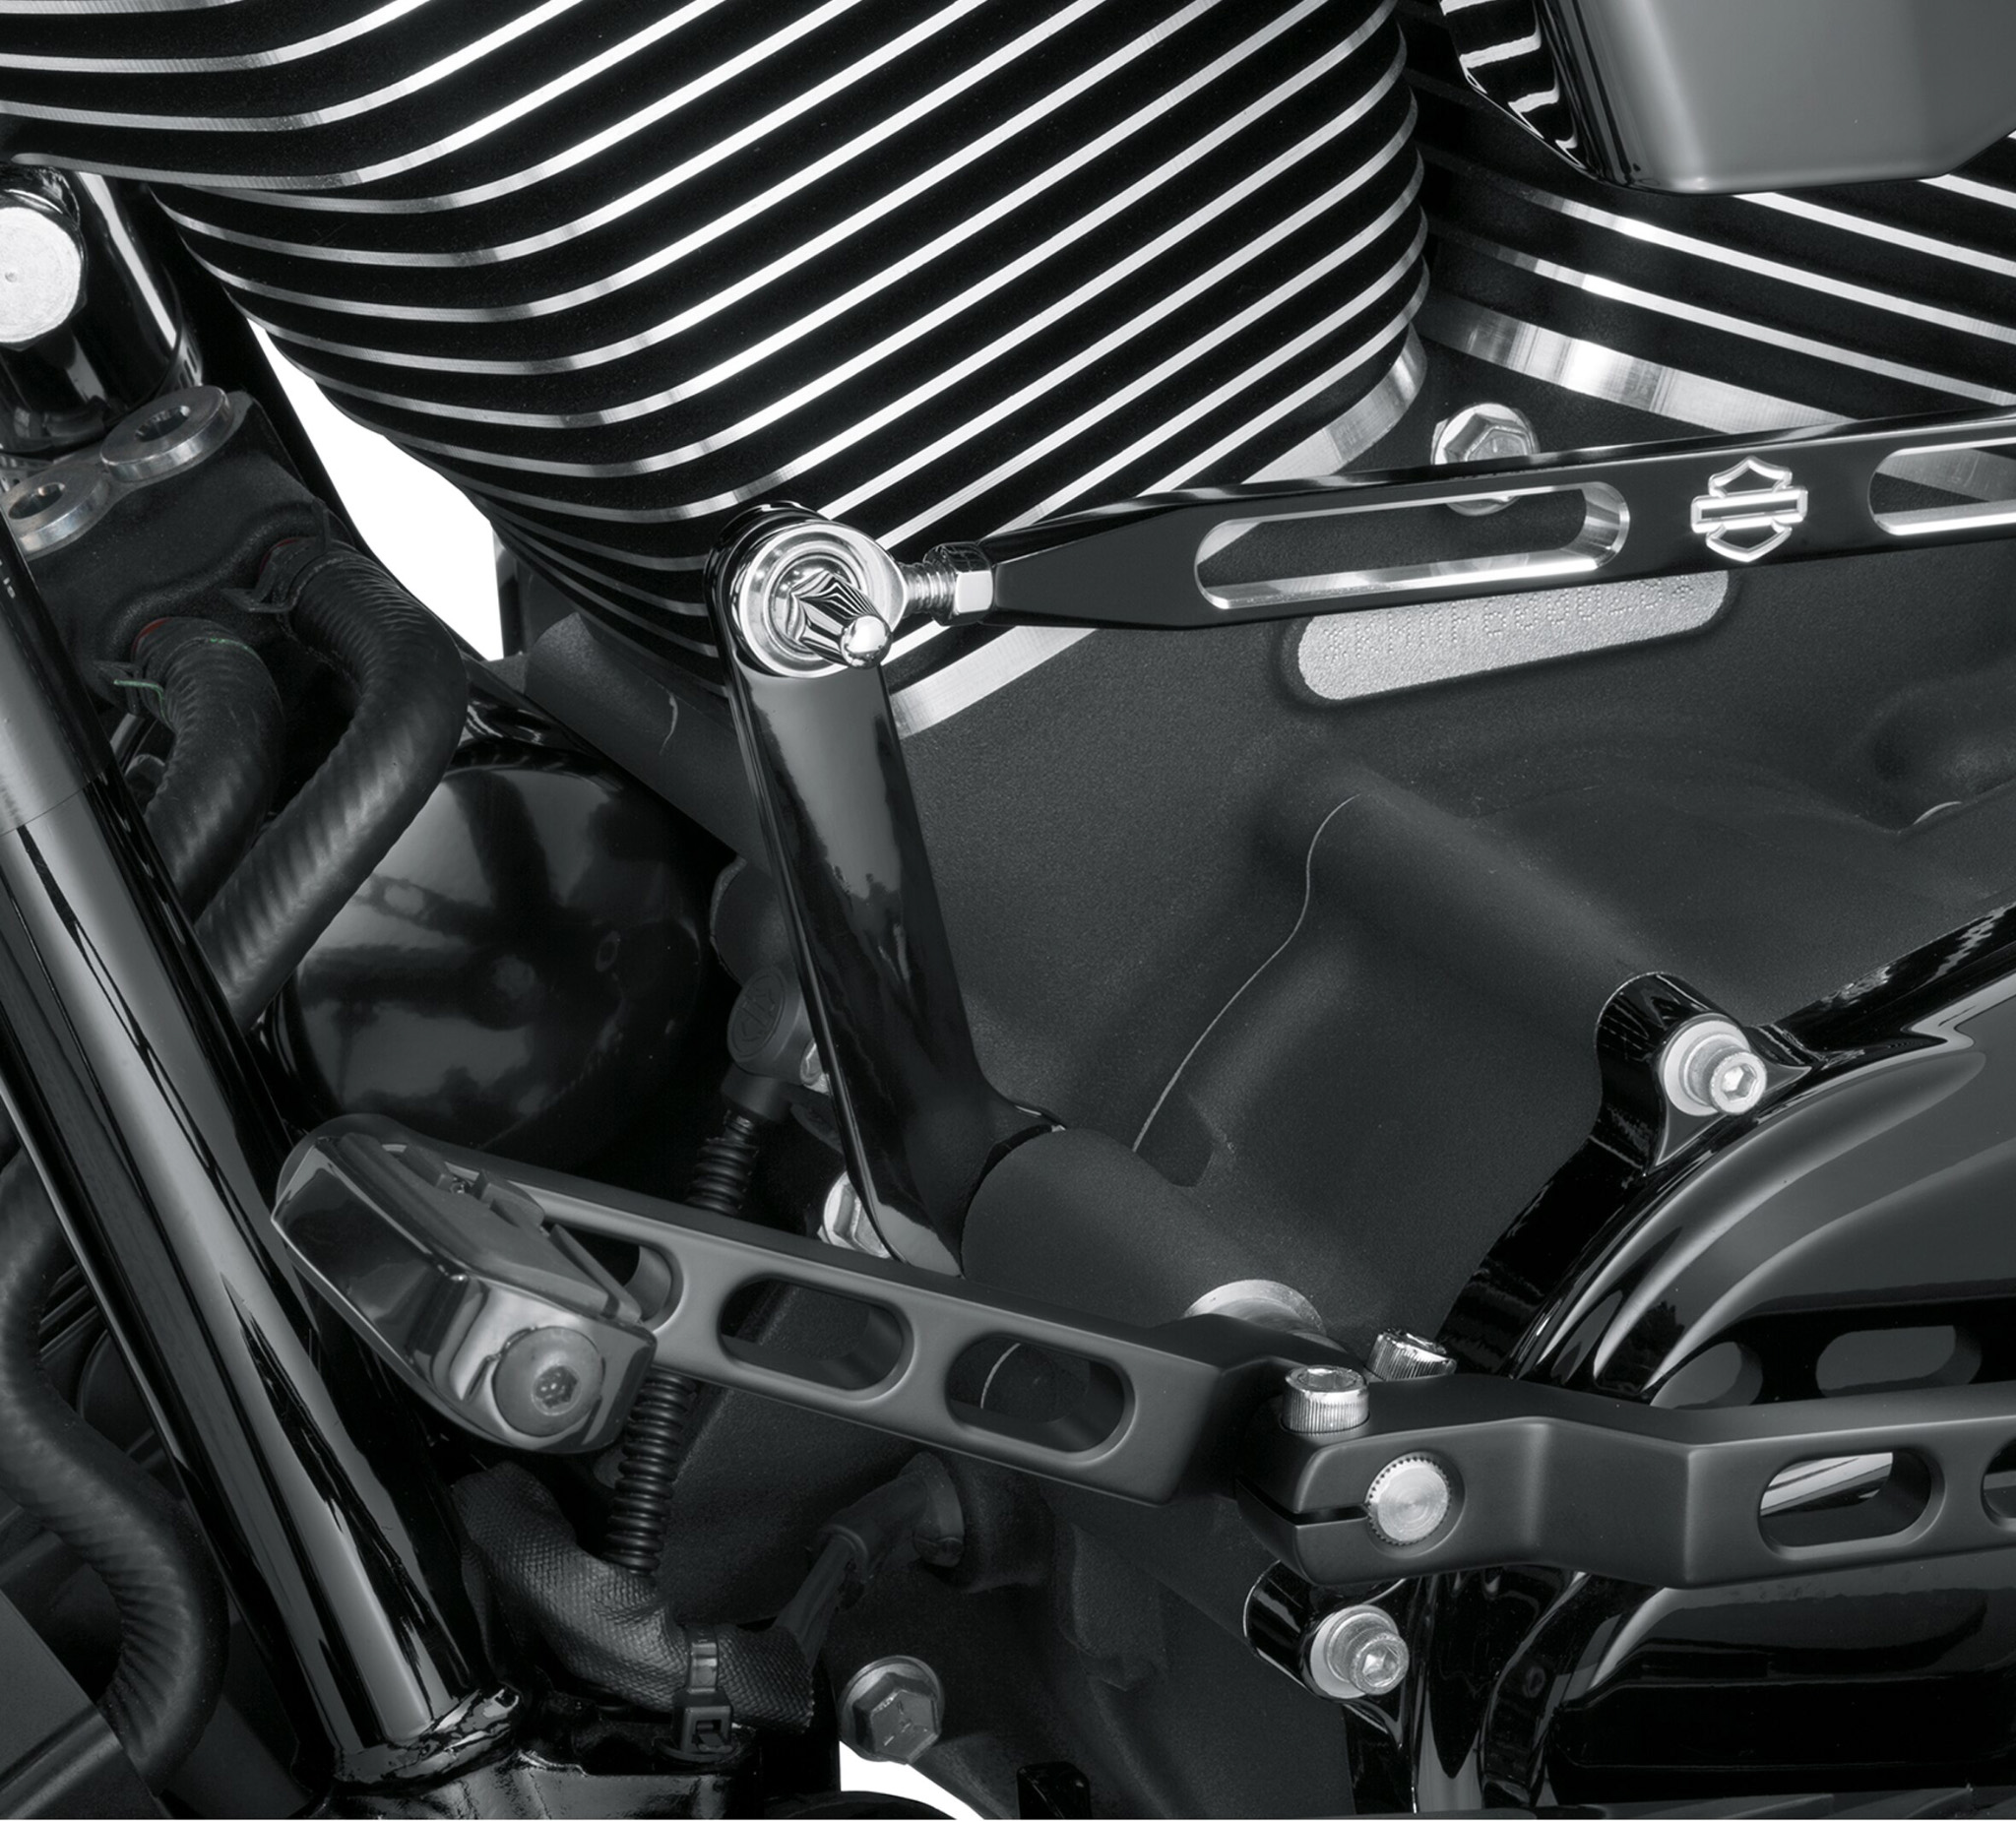 Harley-Davidson 06-18 XL Gloss Black Adjustable Shift Lever